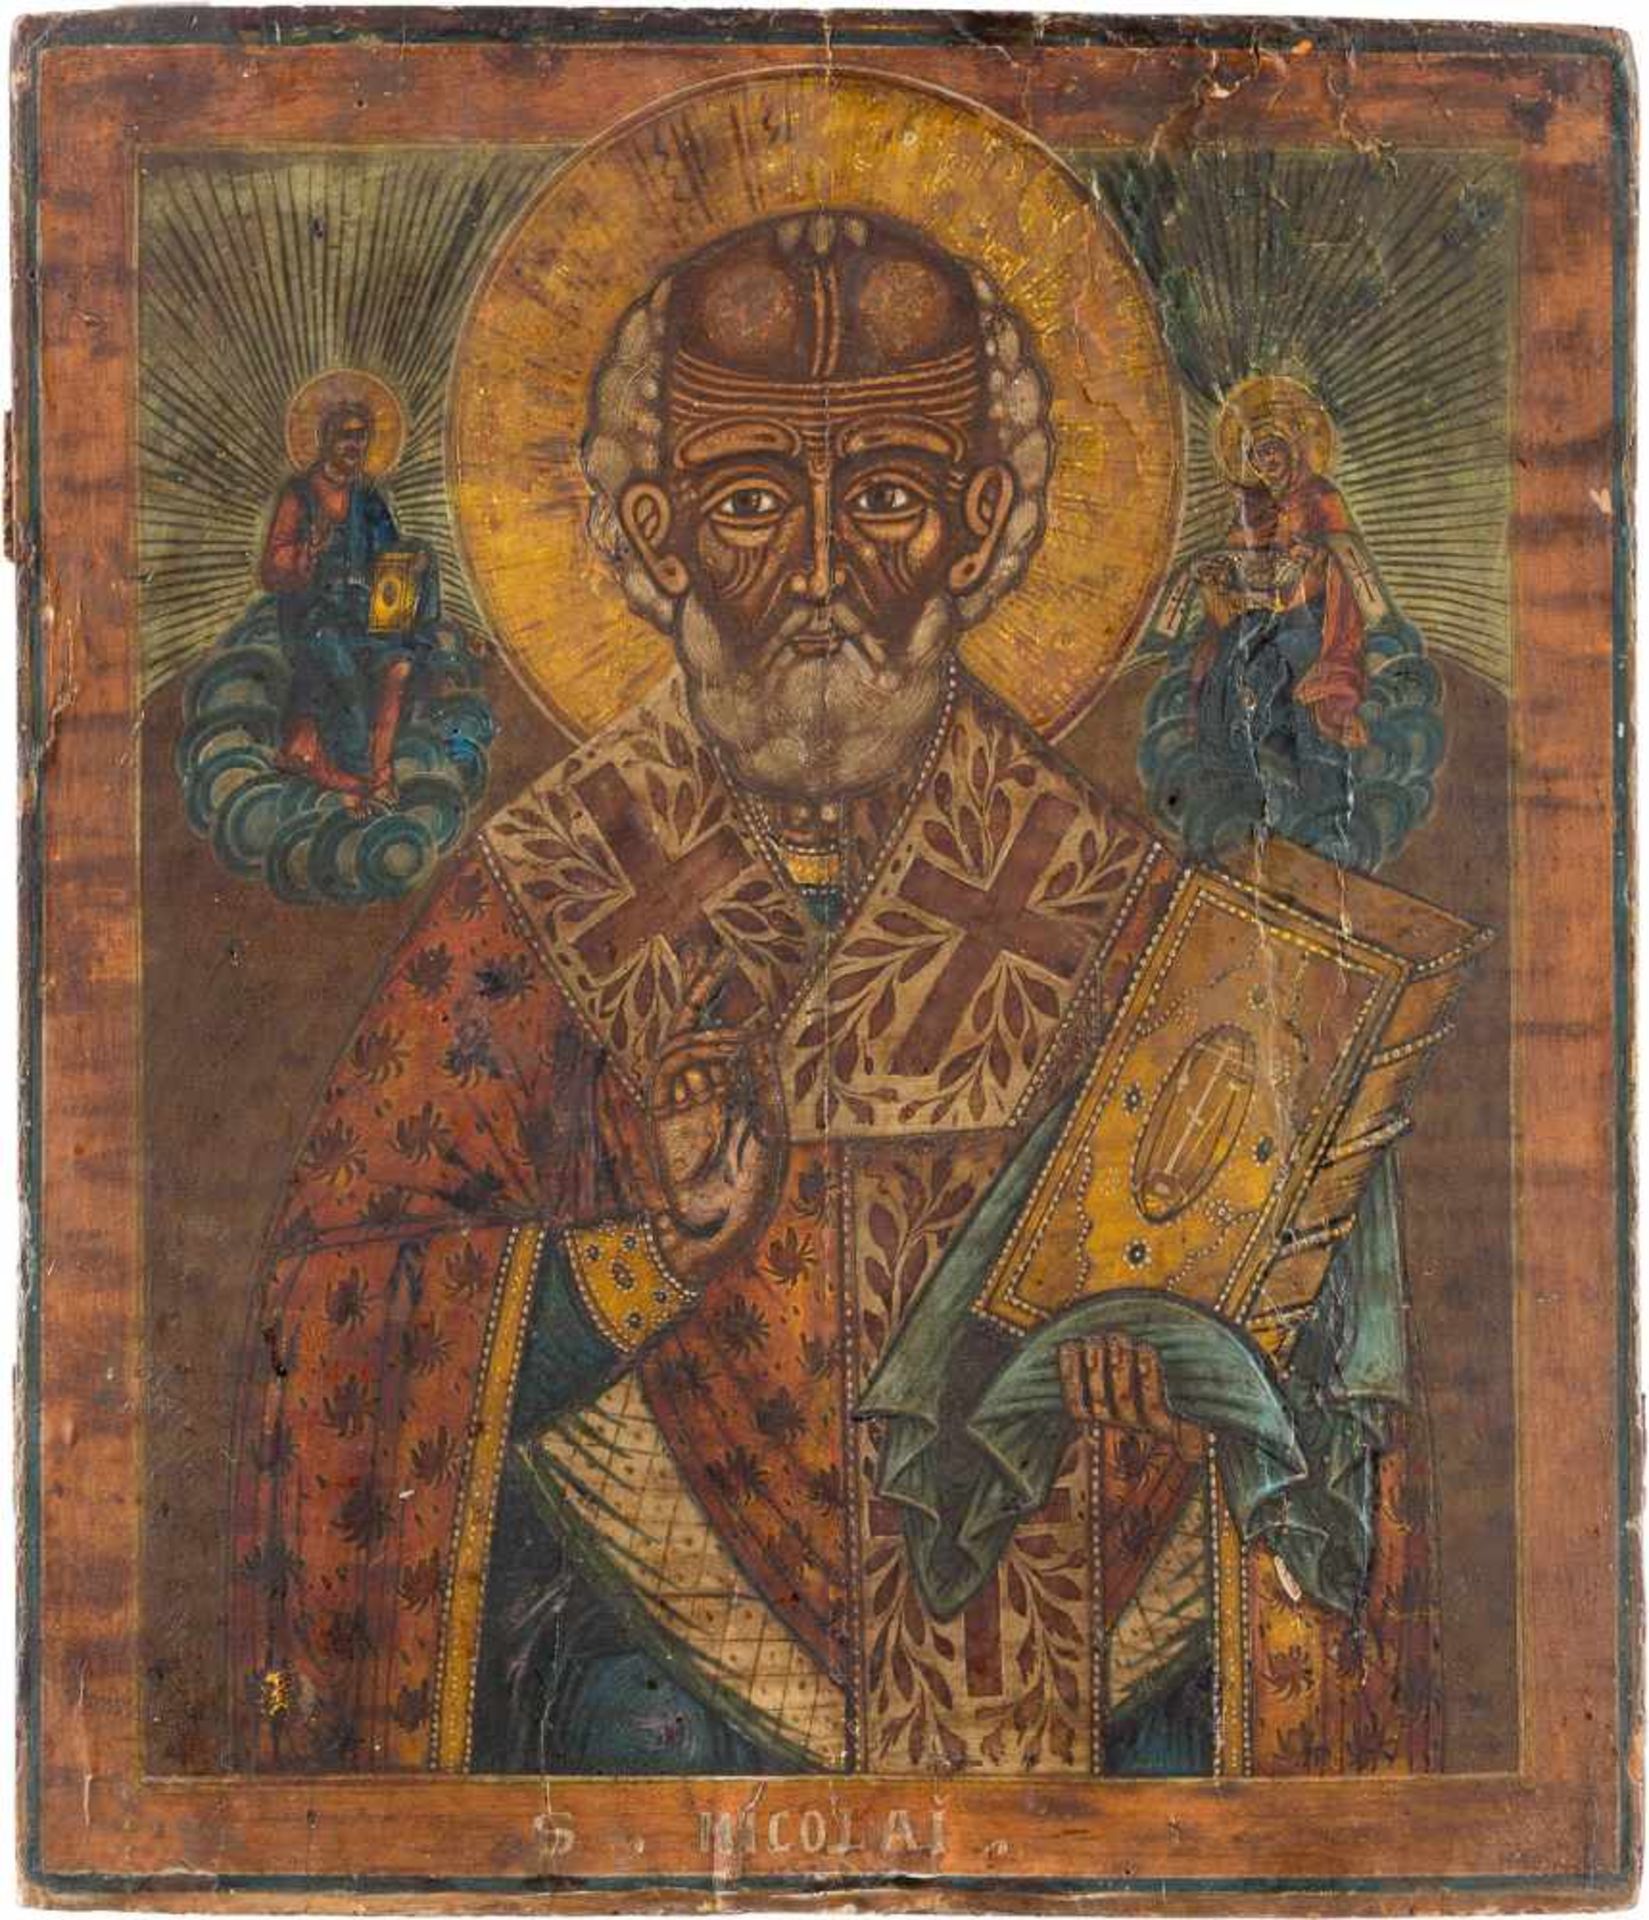 DREI IKONEN: HEILIGER NIKOLAUS VON MYRA UND DIE APOSTEL PETRUS UND PAULUS Russland/Griechenland, - Image 4 of 4